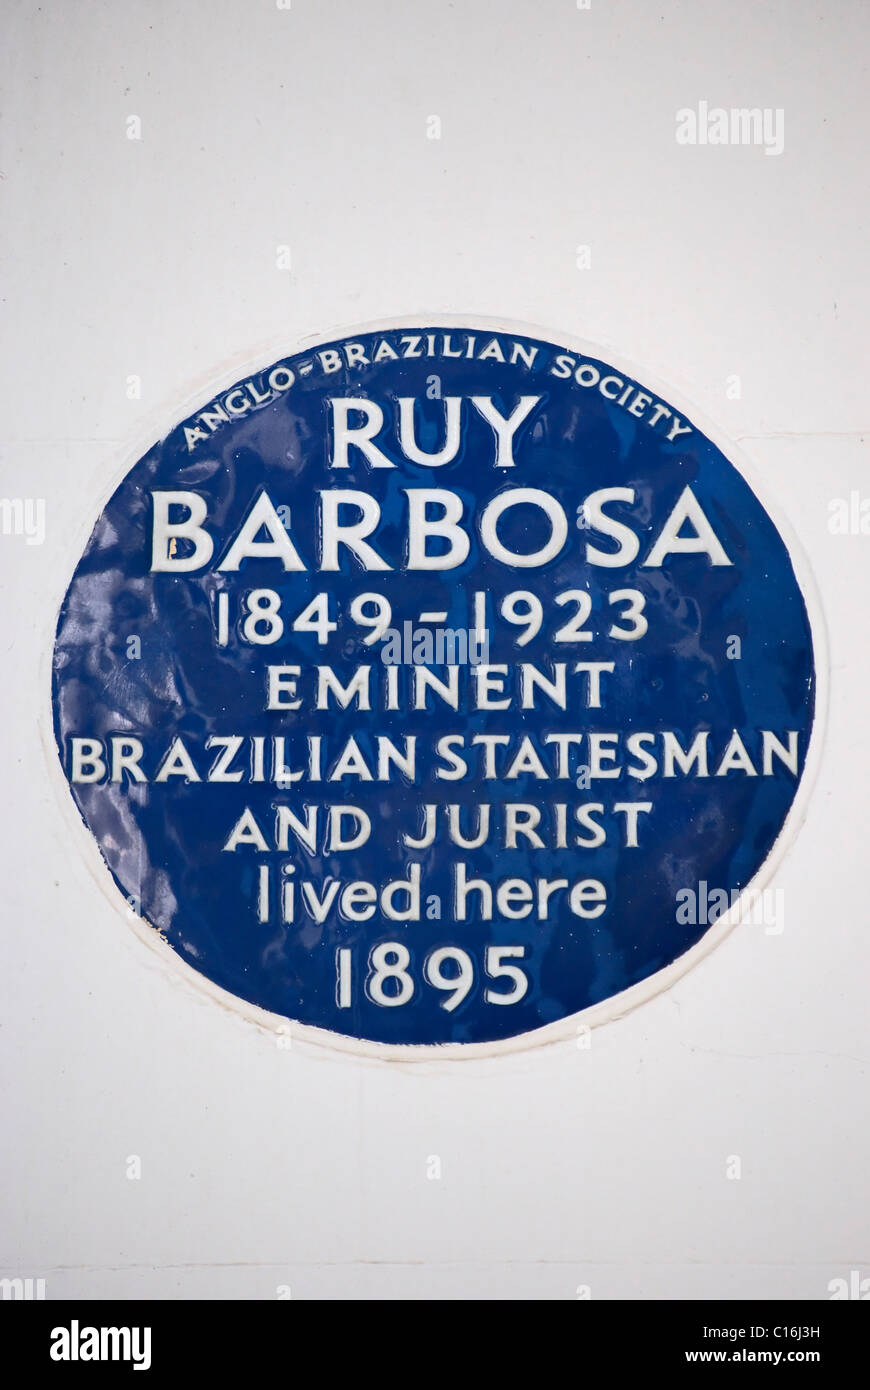 Anglo-brasilianische Gesellschaft Plakette markiert eine Heimat der brasilianischen Staatsmann und Jurist ruy Barbosa, in Holland Park, London, england Stockfoto